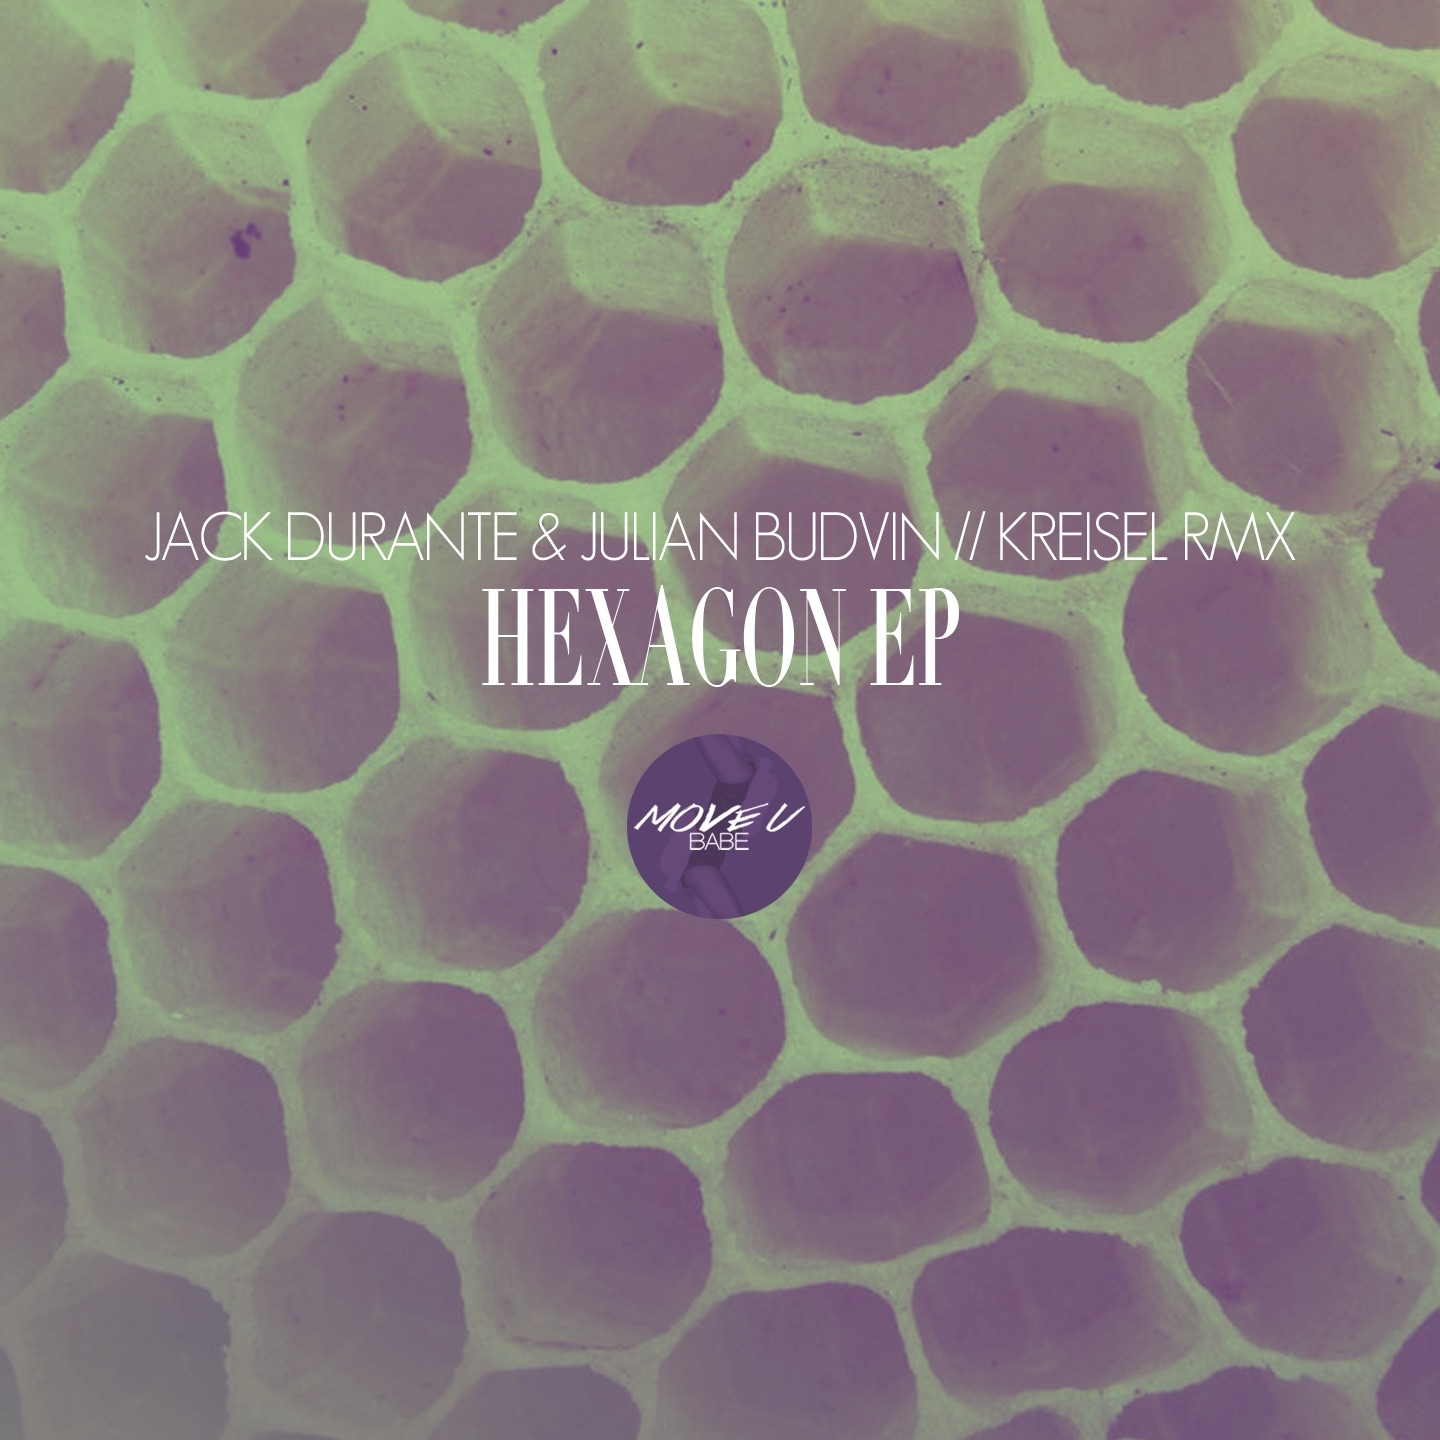 Hexagon Ep